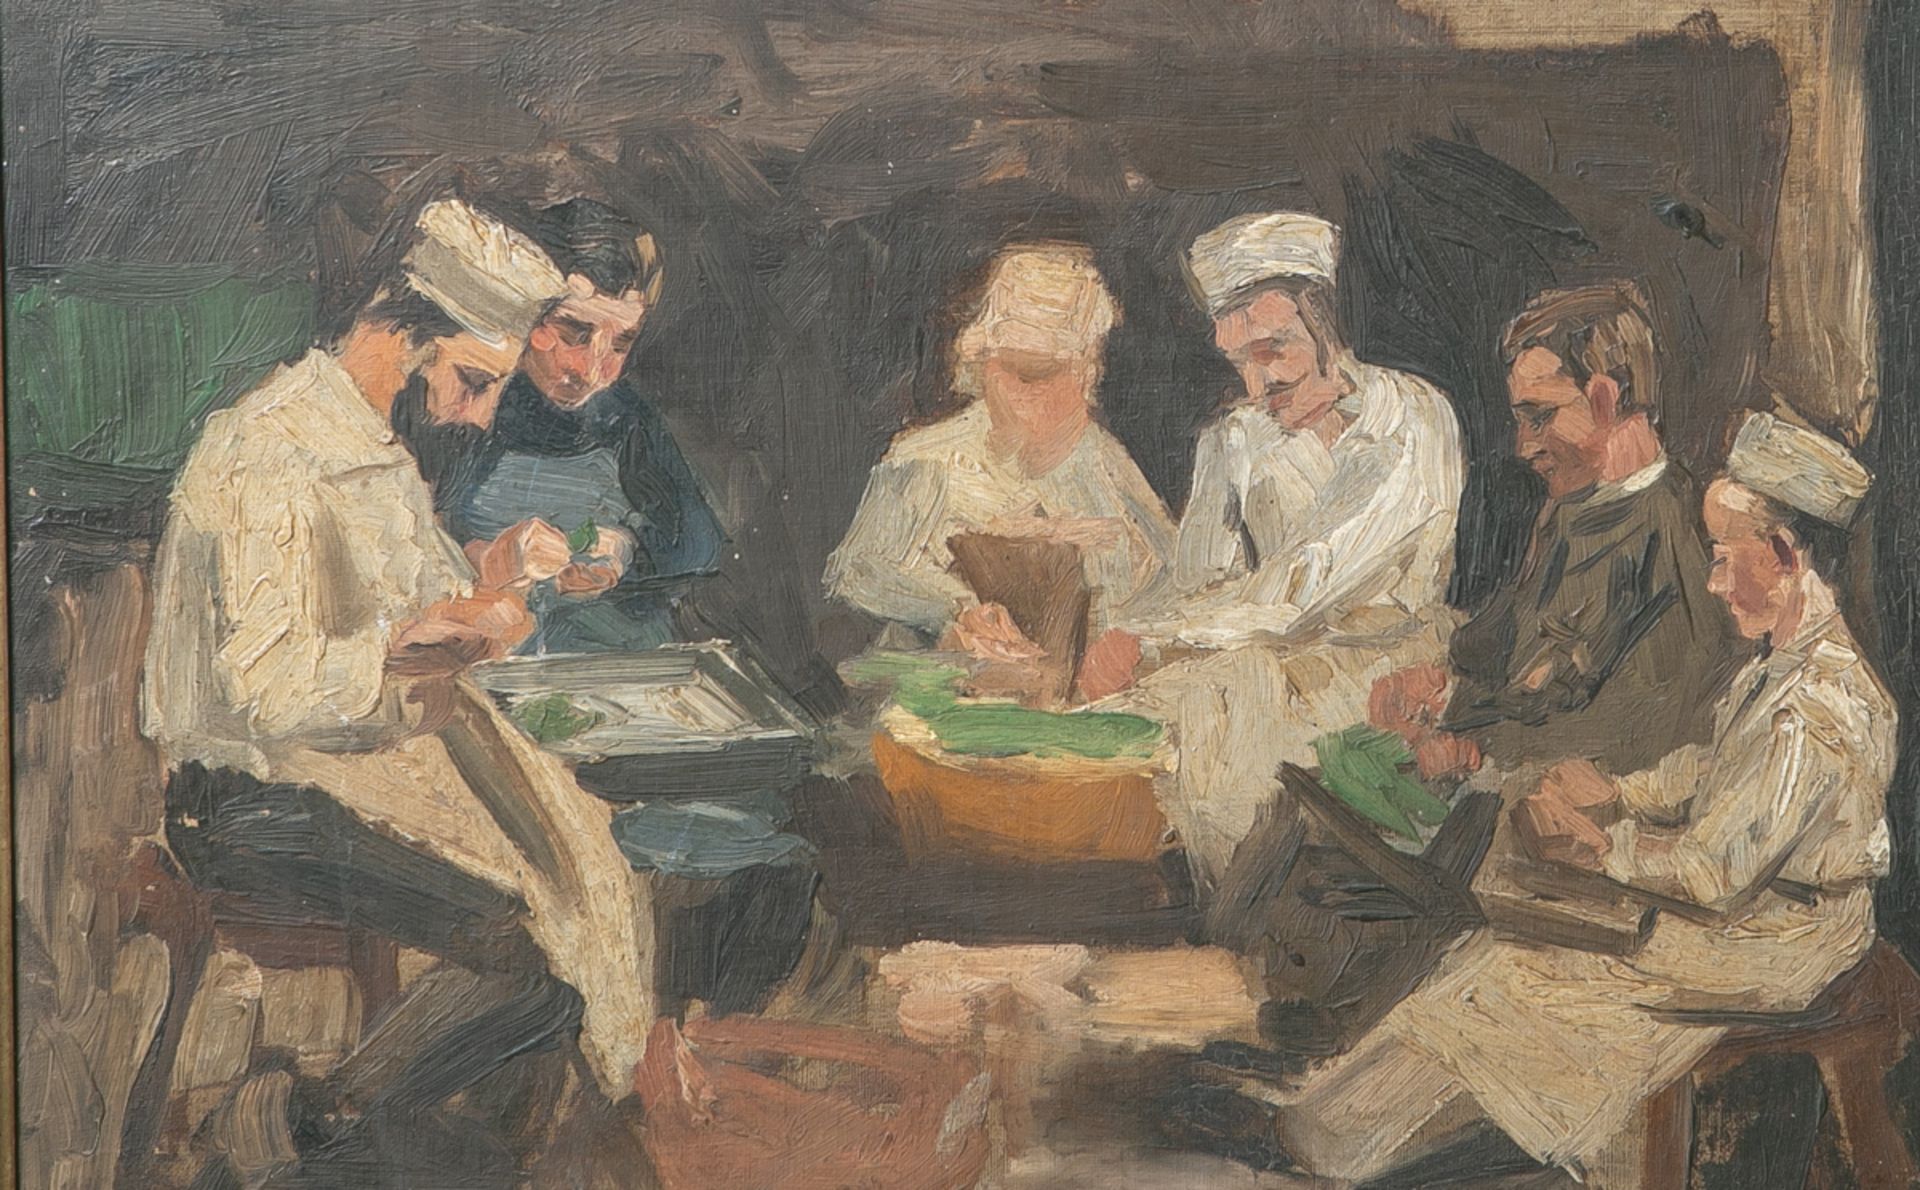 Unbekannter Maler (wohl um 1900), 6 Personen beim Kartoffelschälen, Öl/Malpappe, ca. 30 x44 cm,